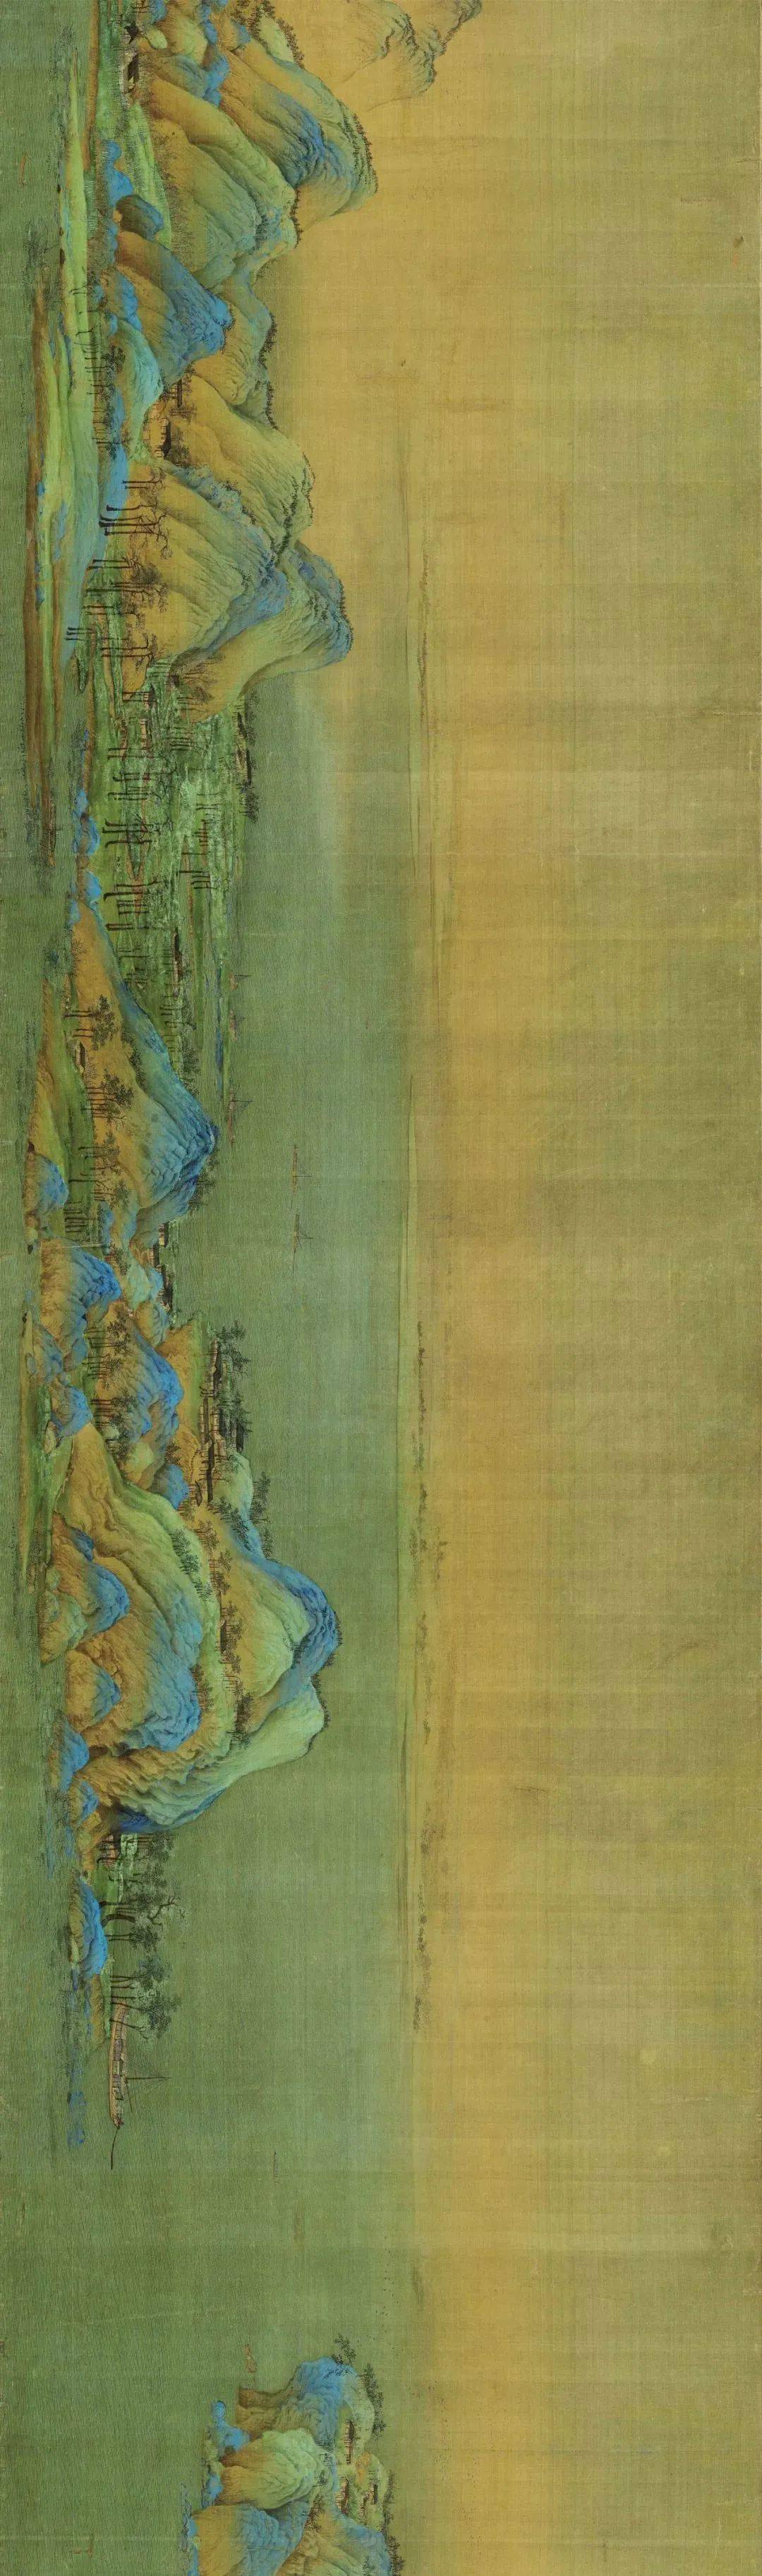 点石成画,《千里江山图》中这些千年不褪色的矿物颜料什么来头?